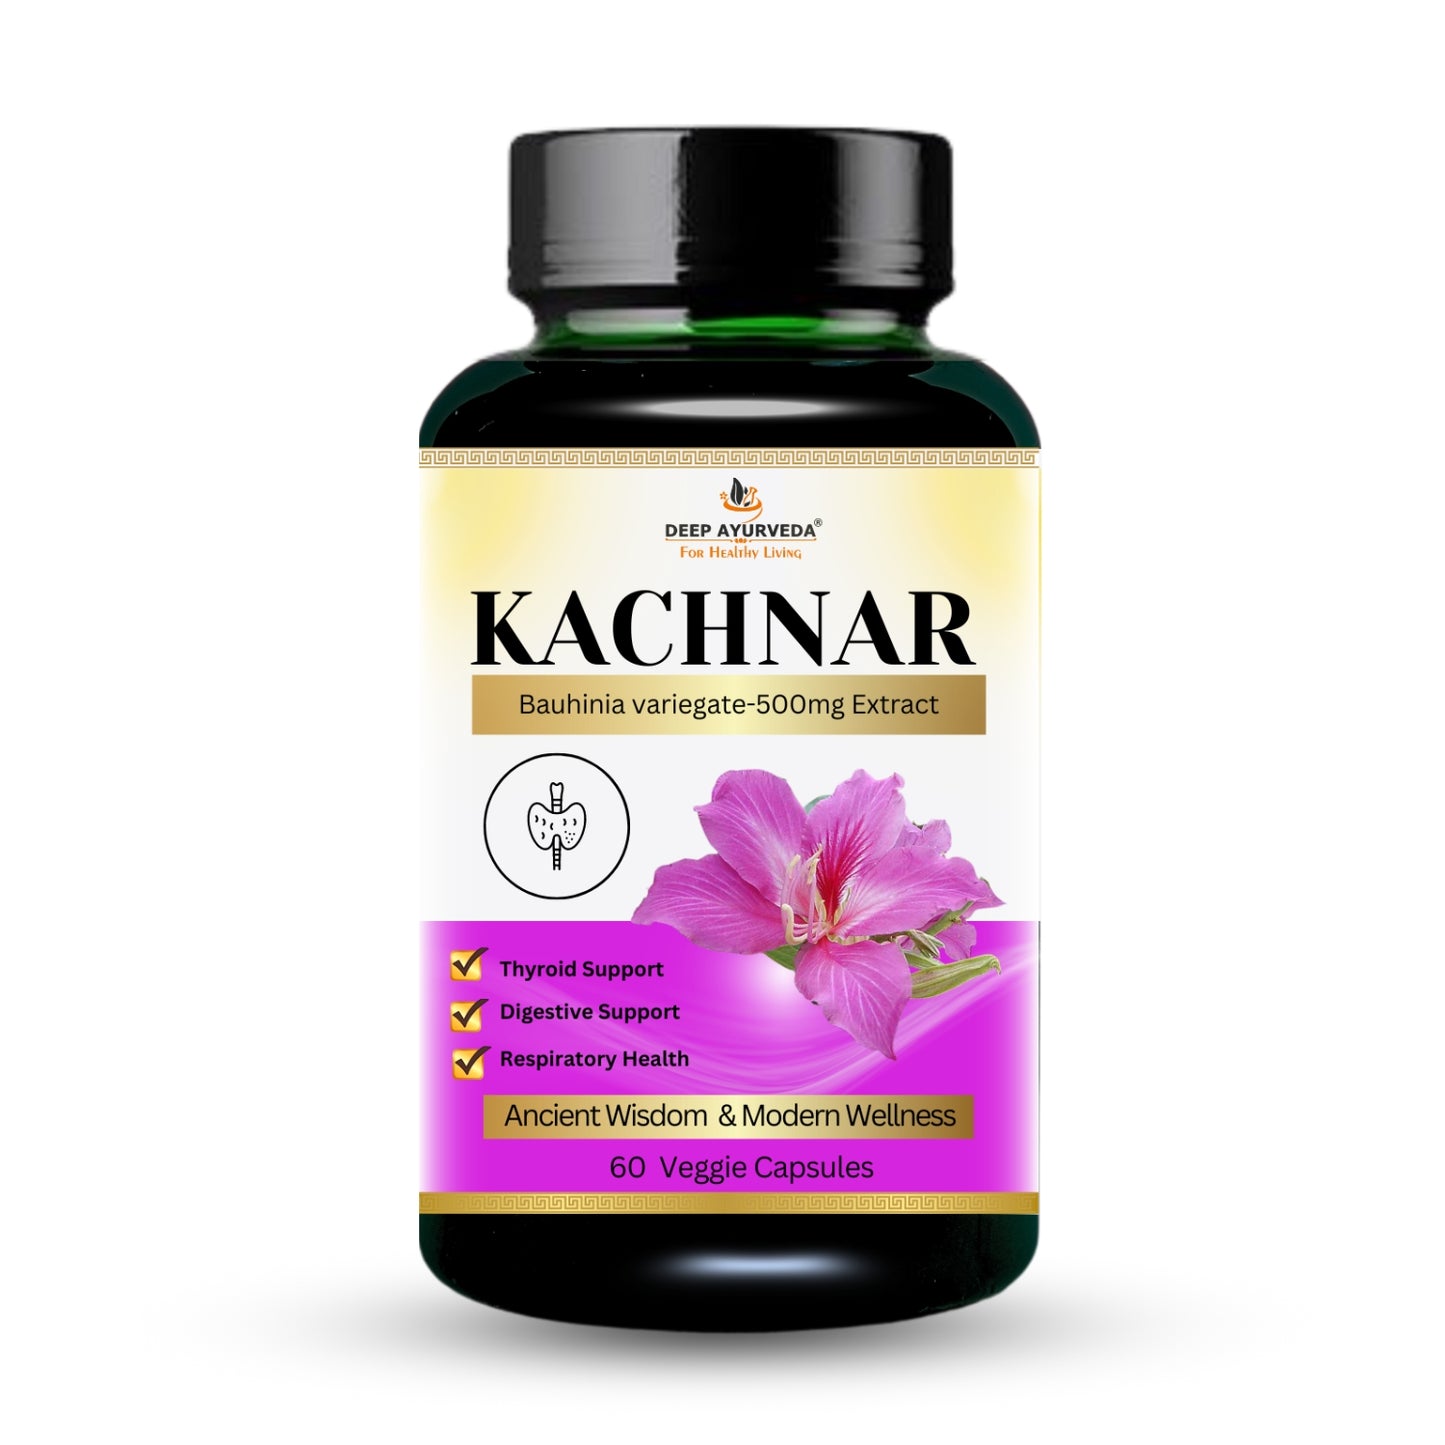 Kachnar Vegan Capsule-500mg Extract of Bauhinia variegate |  Skin Care, Healthy Thyroid Function & Digestive Health